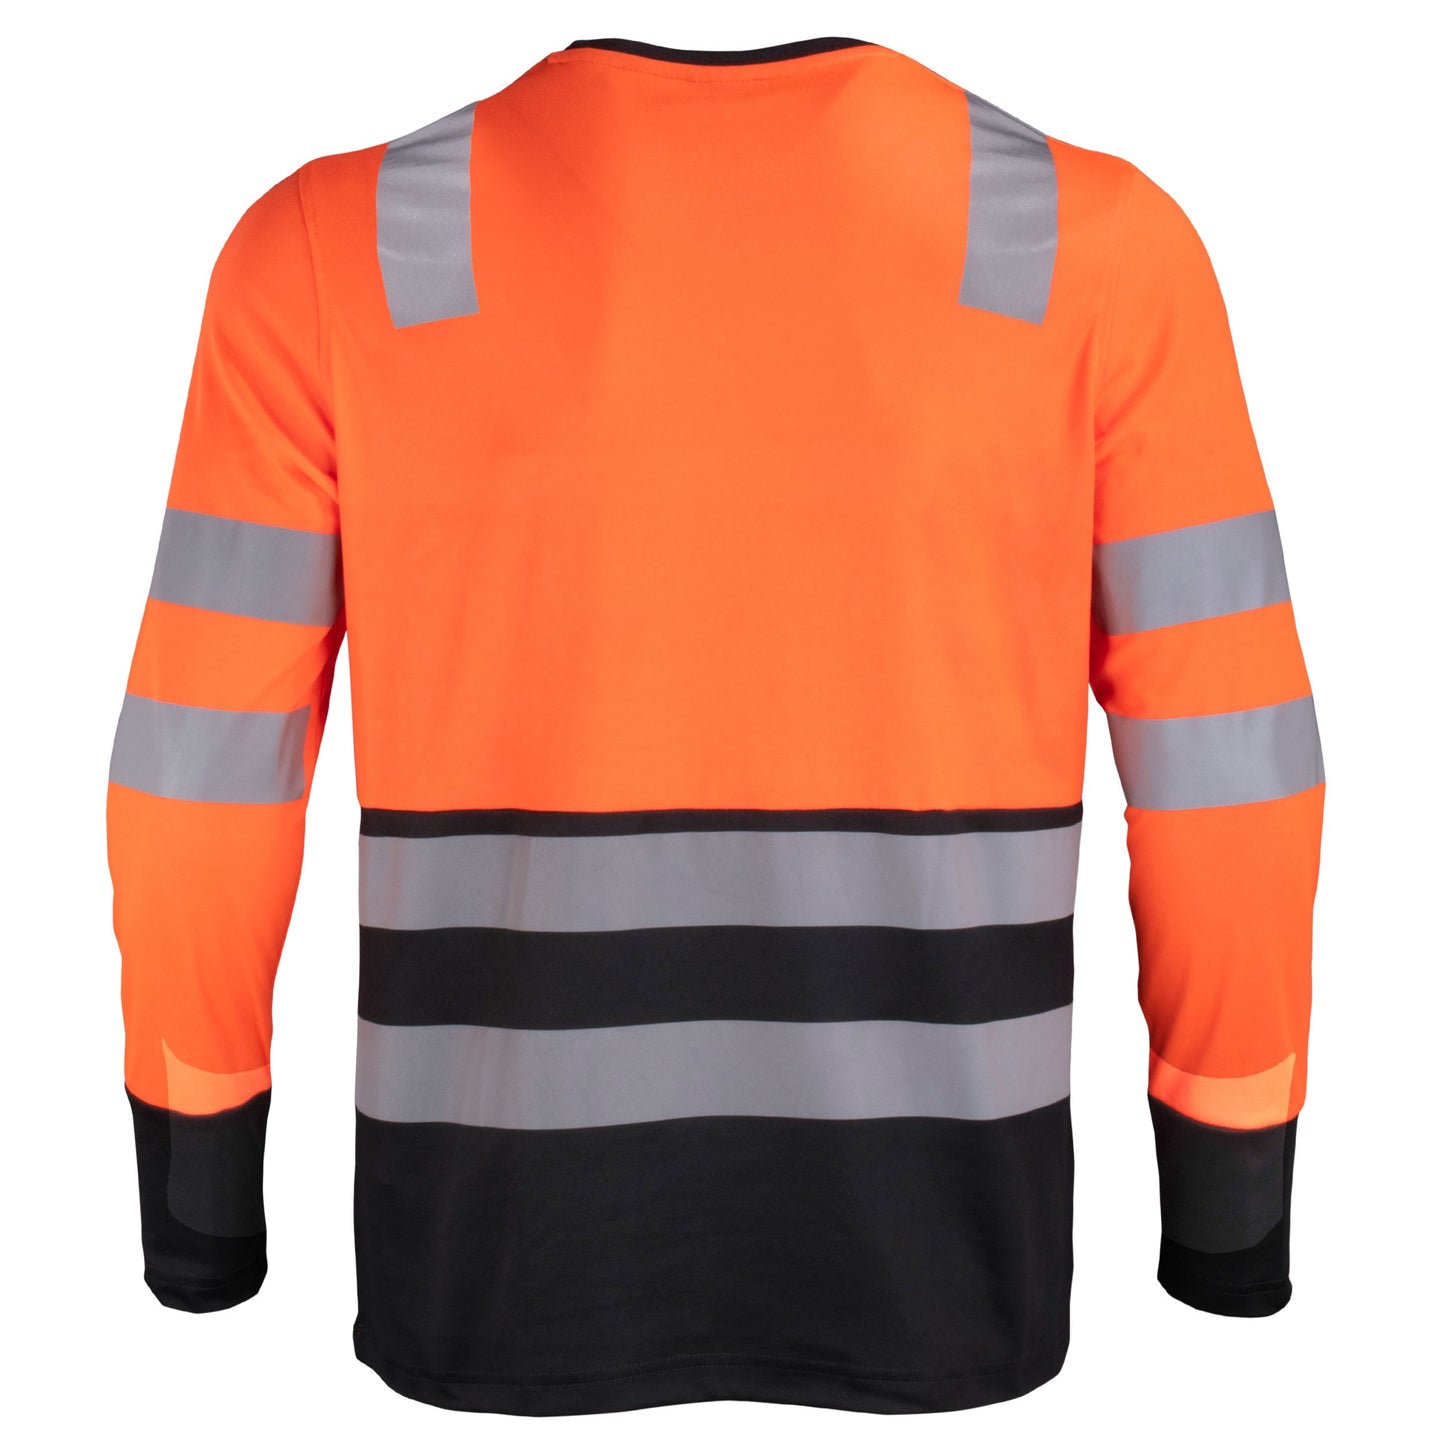 Polera de alta visibilidad bicolor de manga larga, espalda naranjo y negro, para trabajo industrial